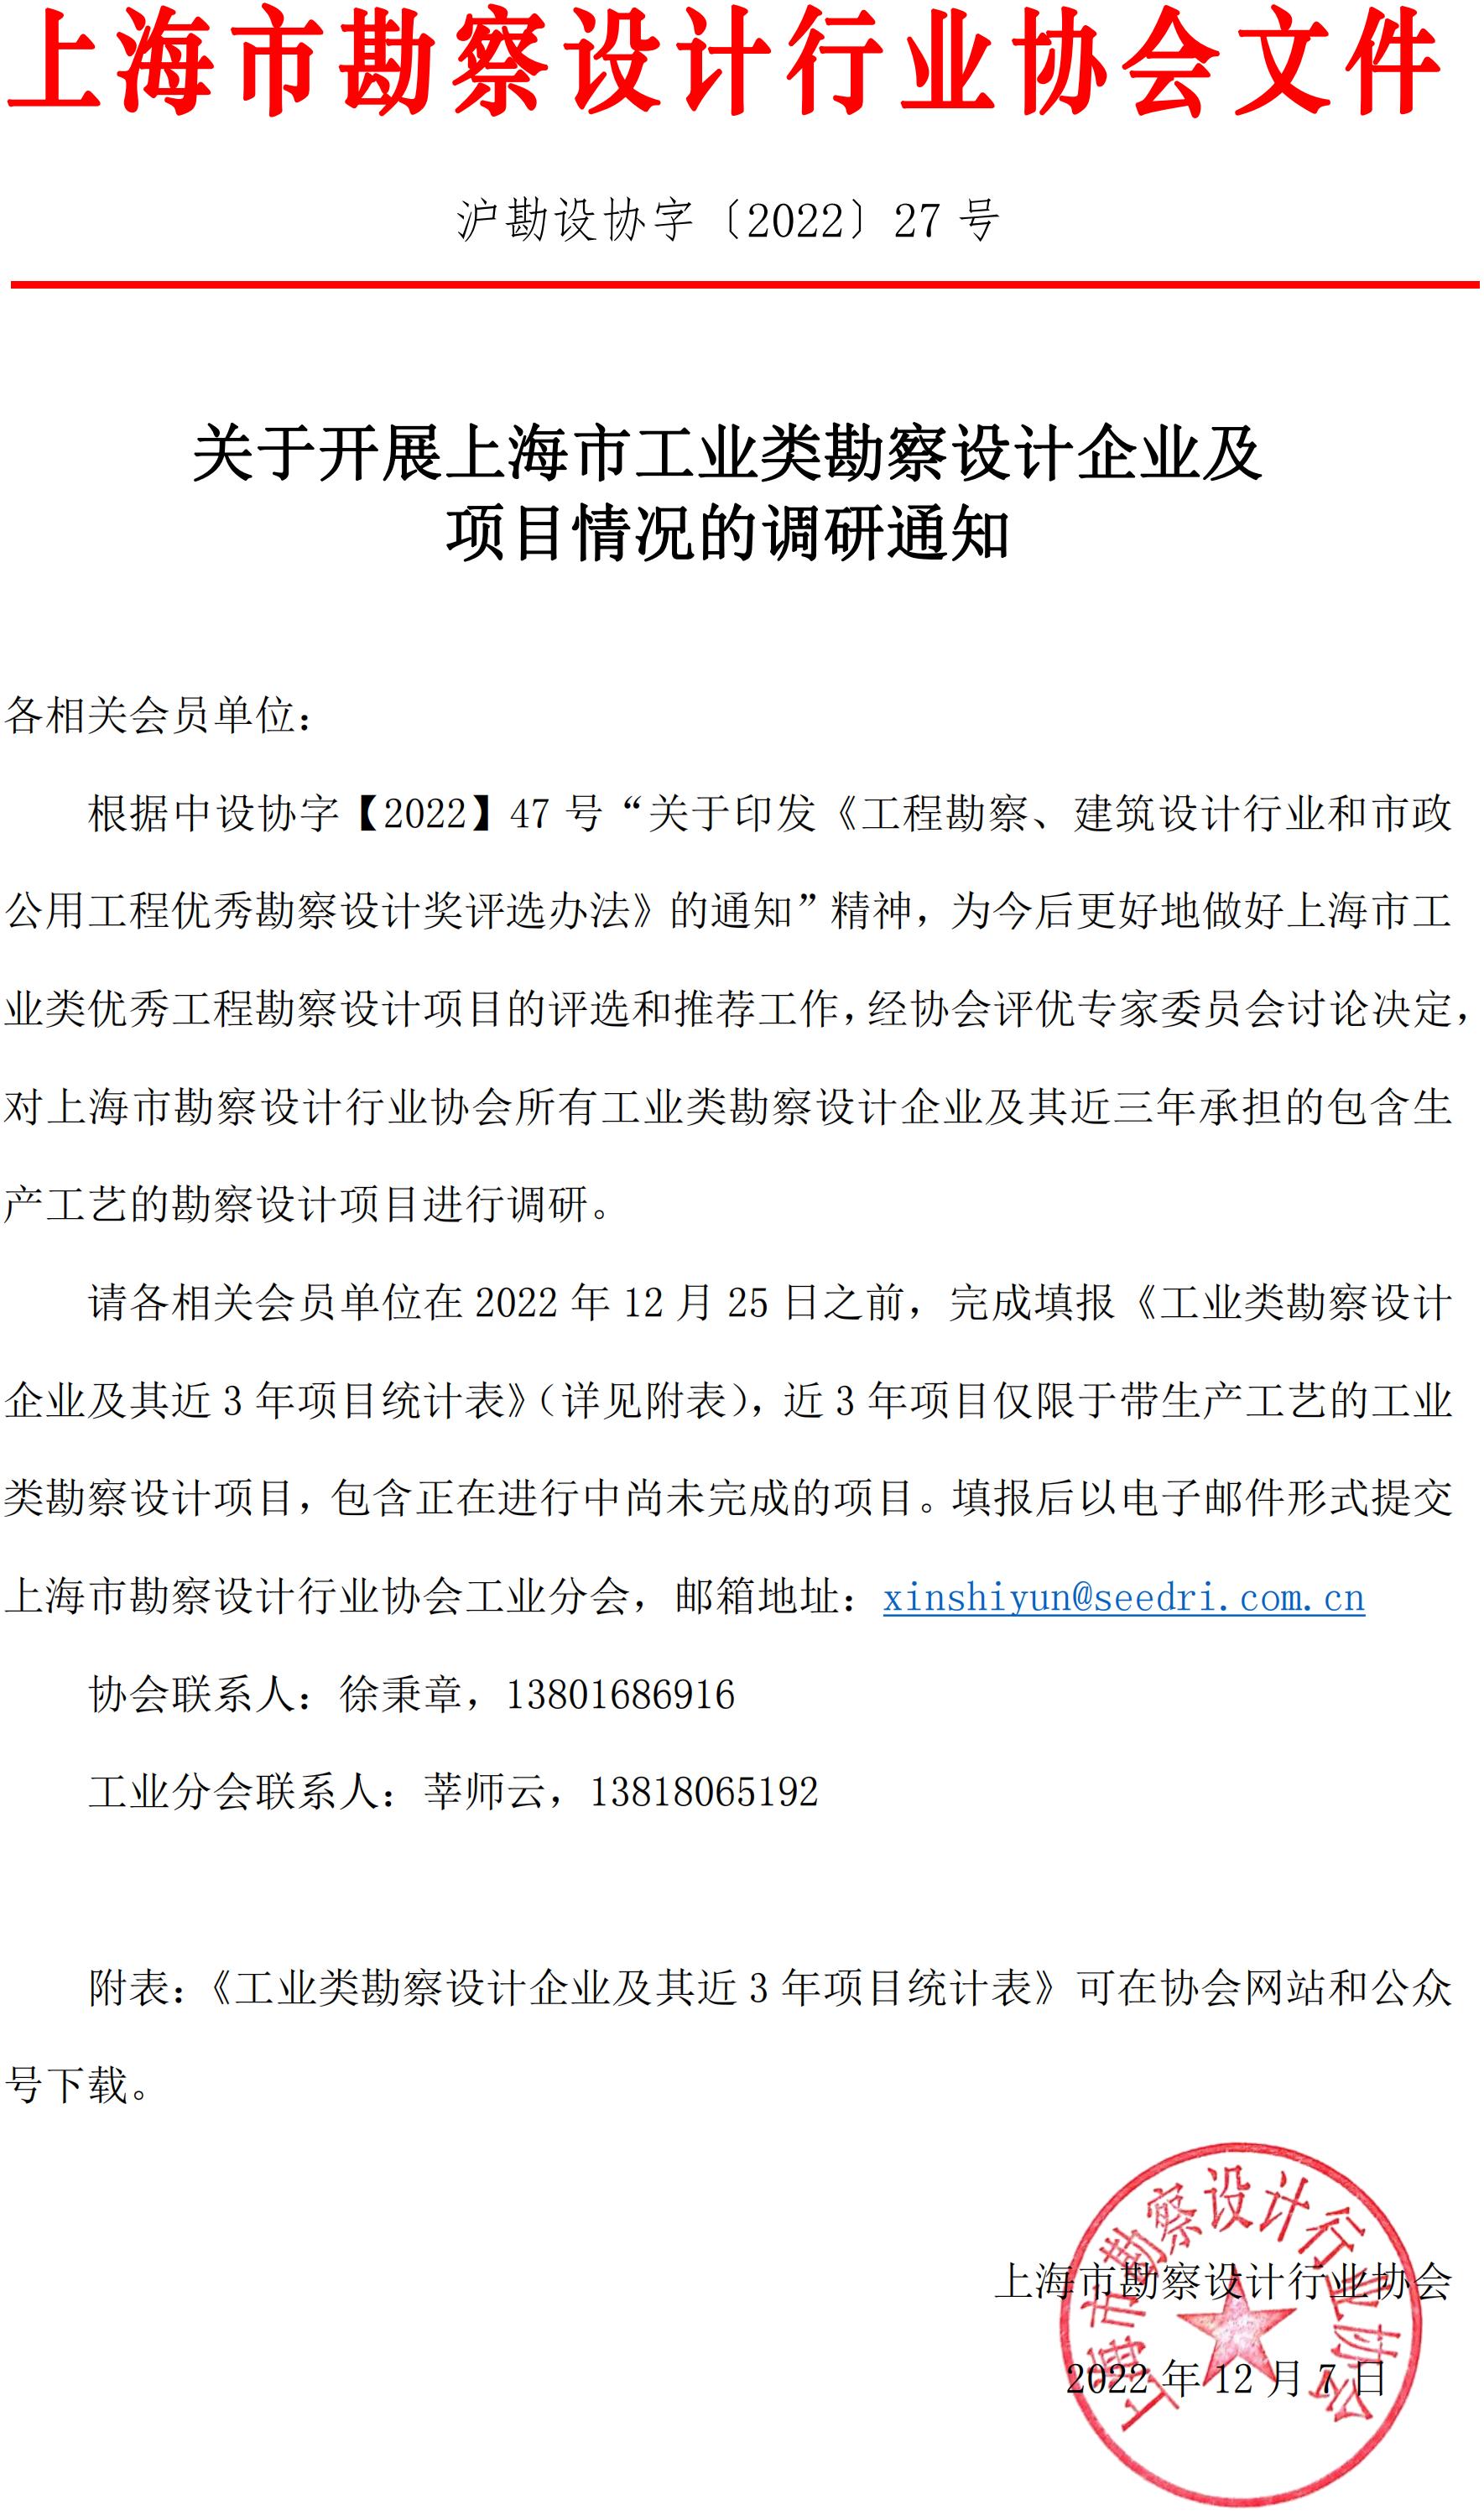 关于开展上海市工业类勘察设计企业及项目情况的调研通知(1)(1)_00.jpg